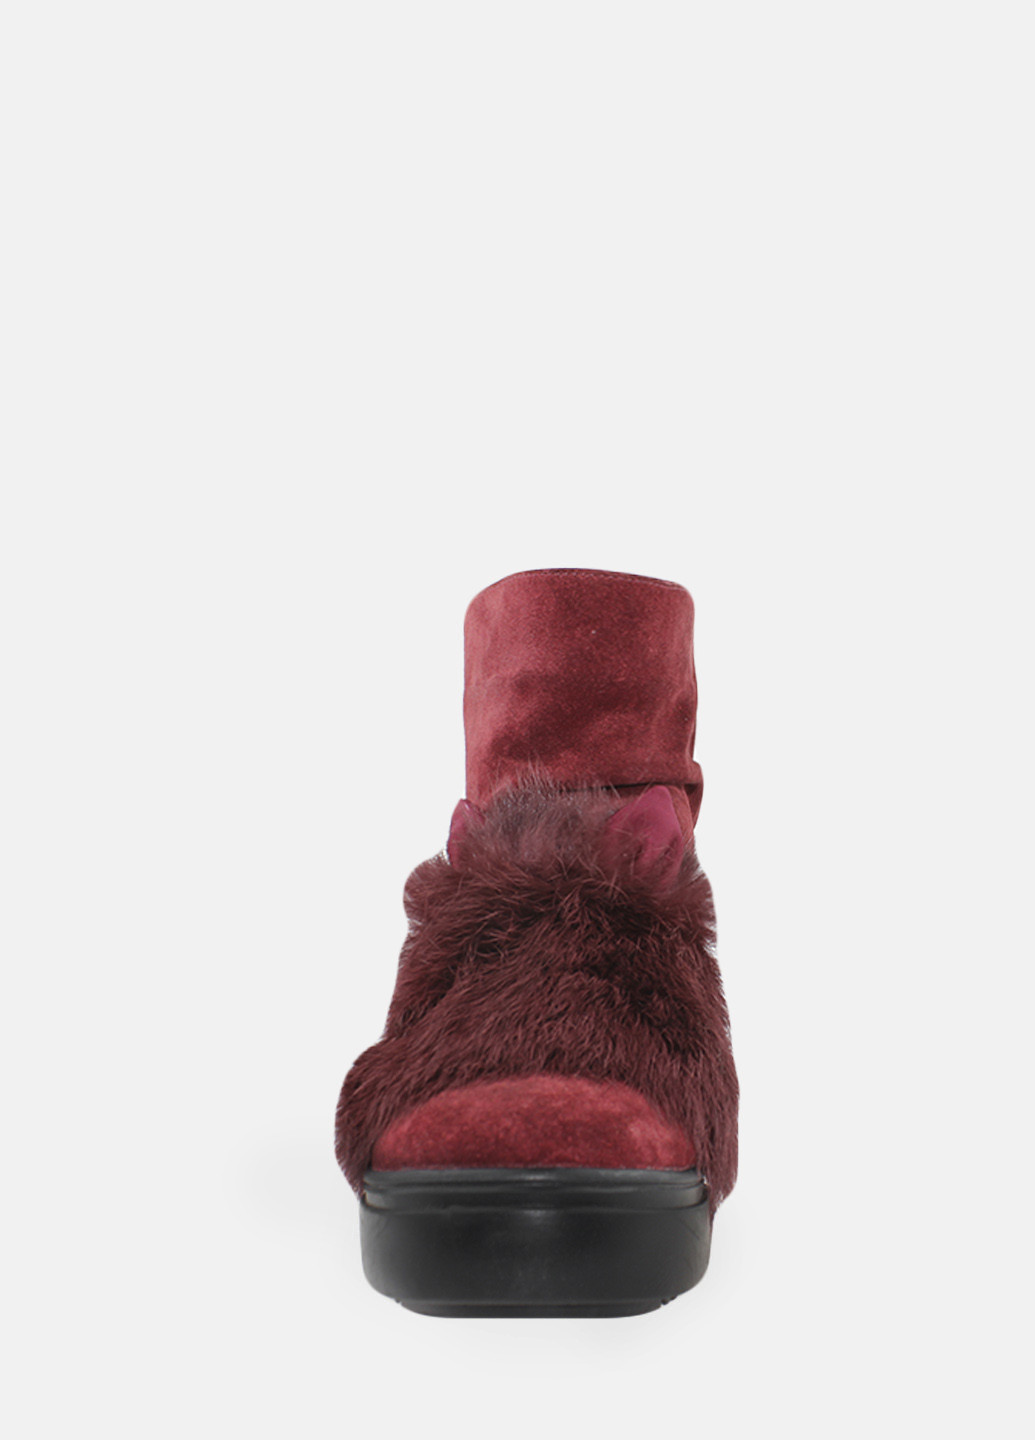 Зимние ботинки rsm153-11 бордовый Sothby's из натуральной замши